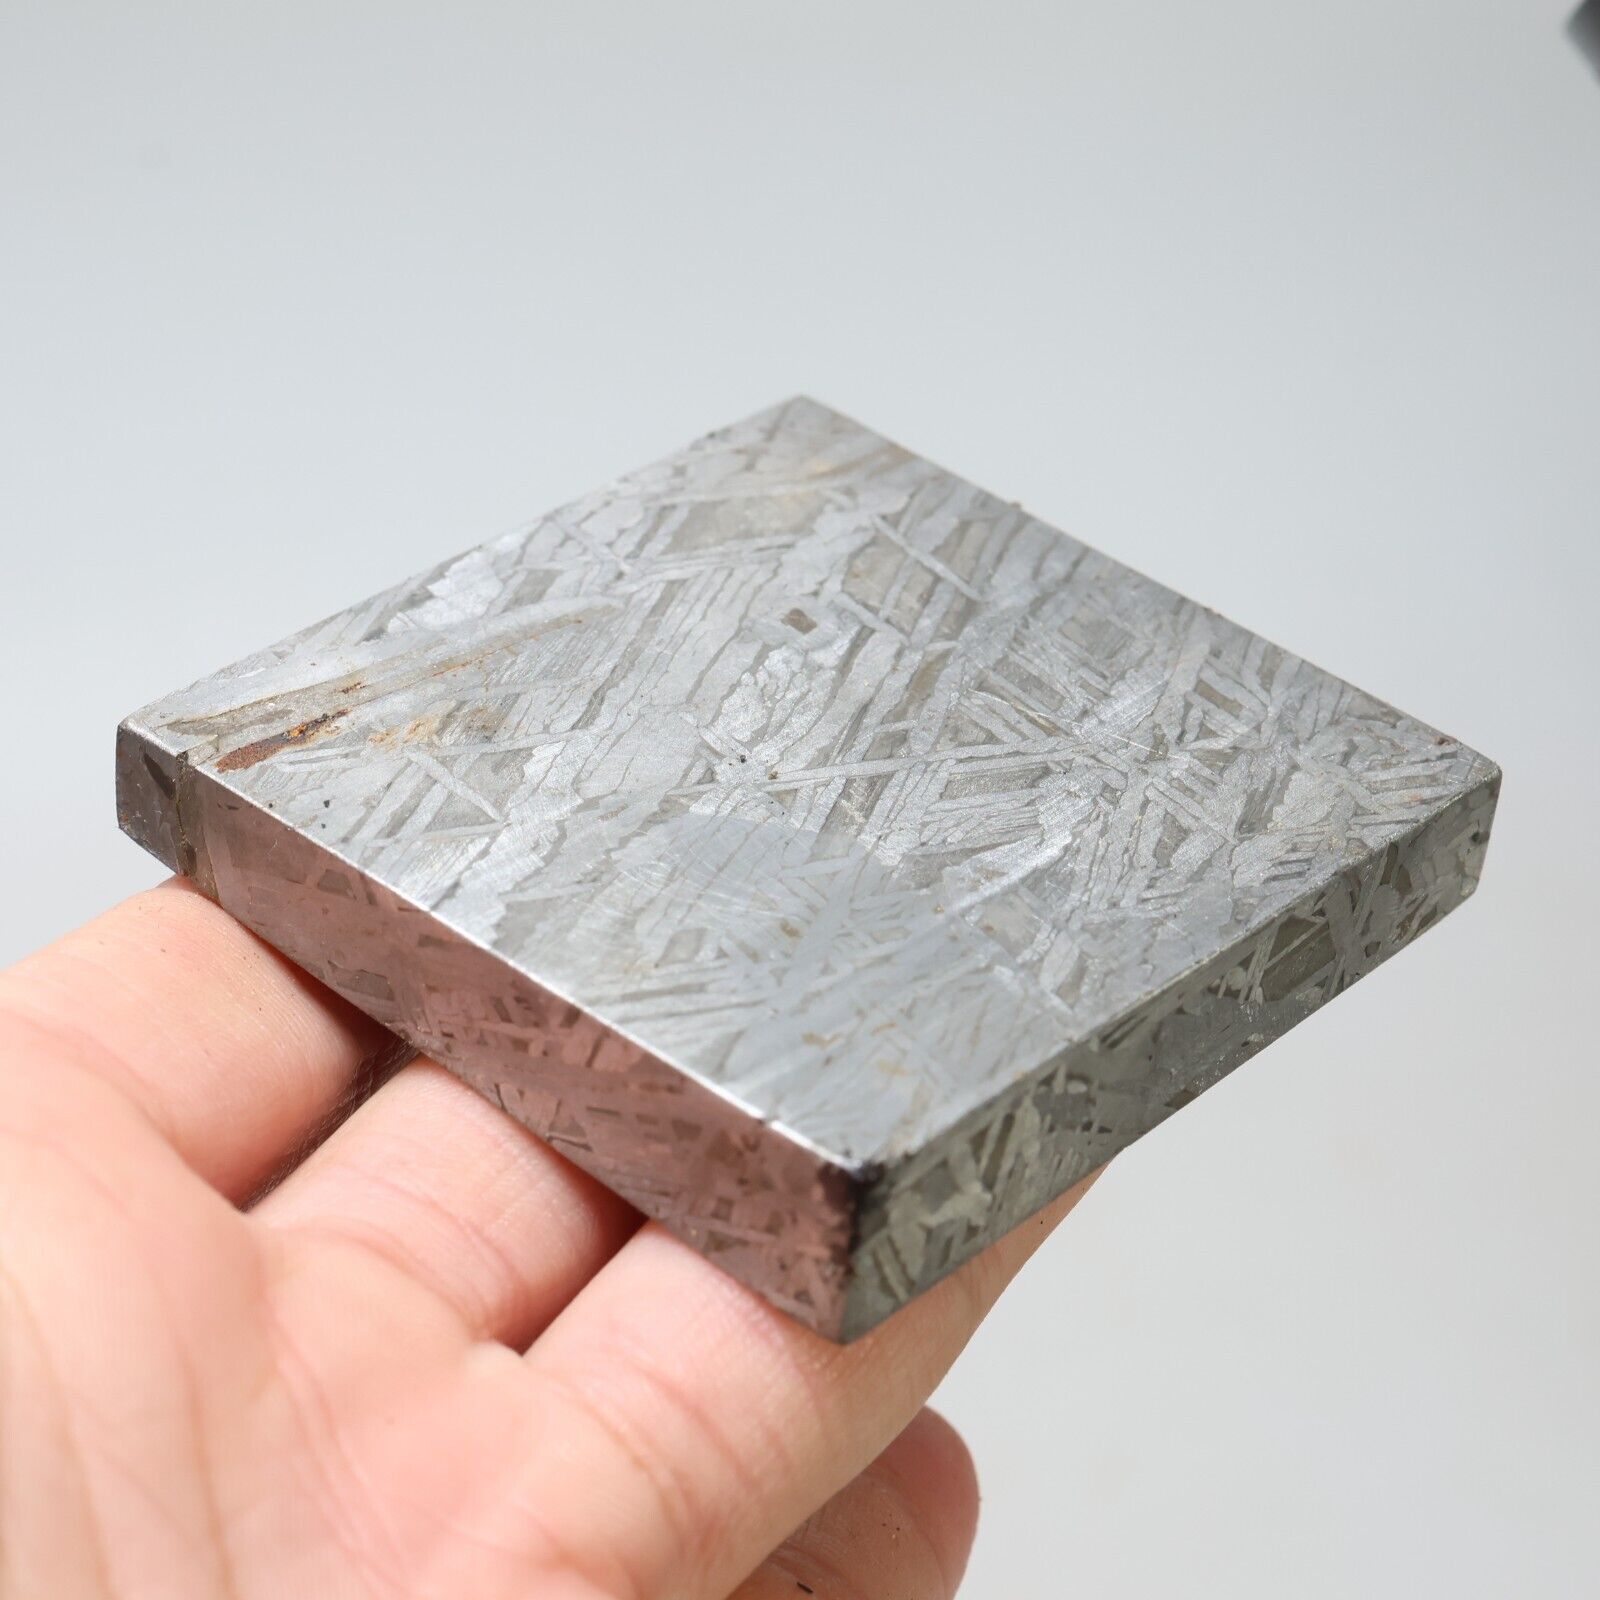 209g  Muonionalusta meteorite part slice C7407